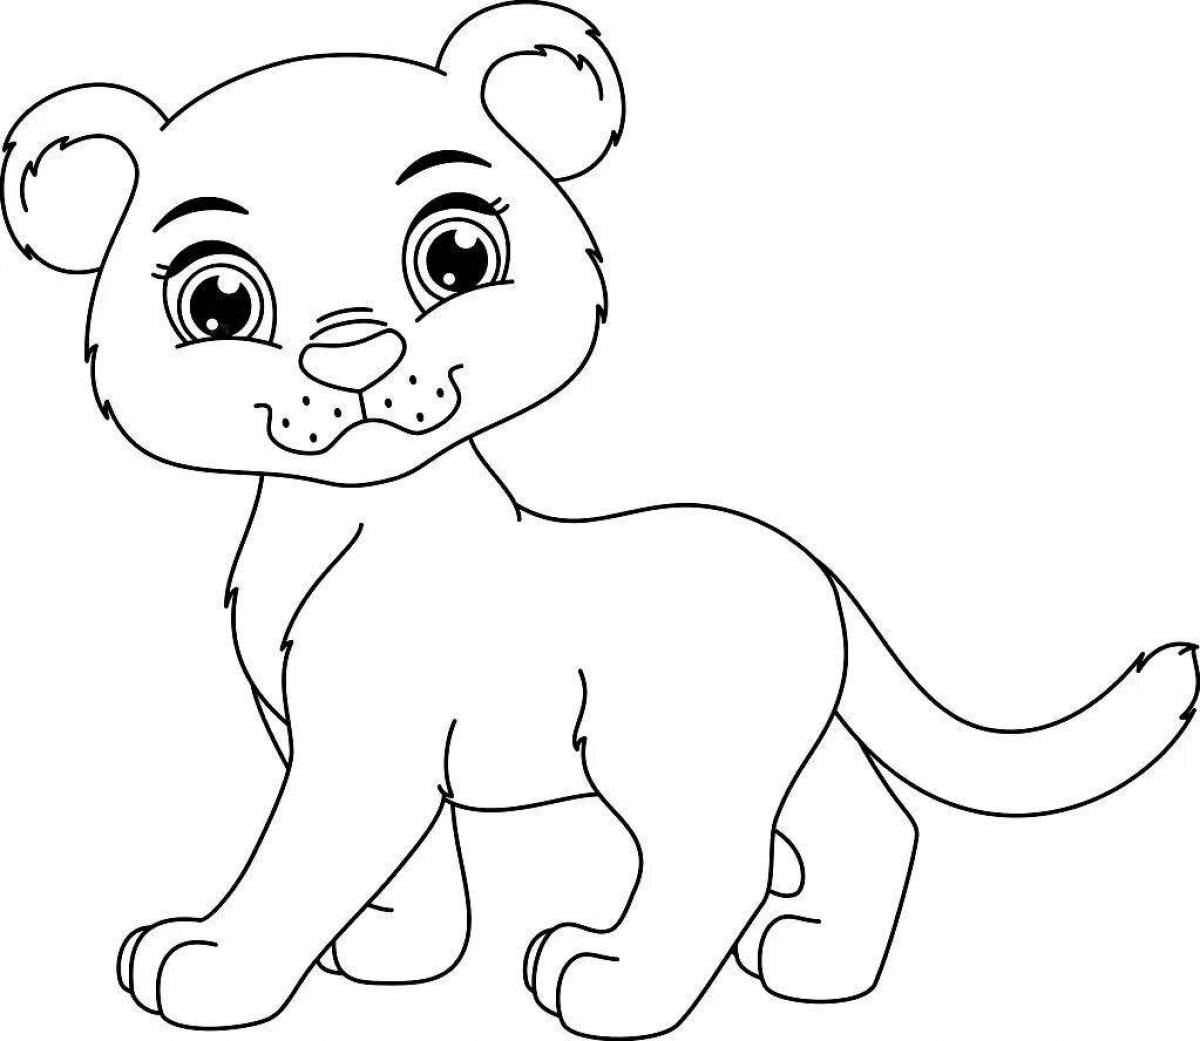 Раскраска величественная пантера для детей